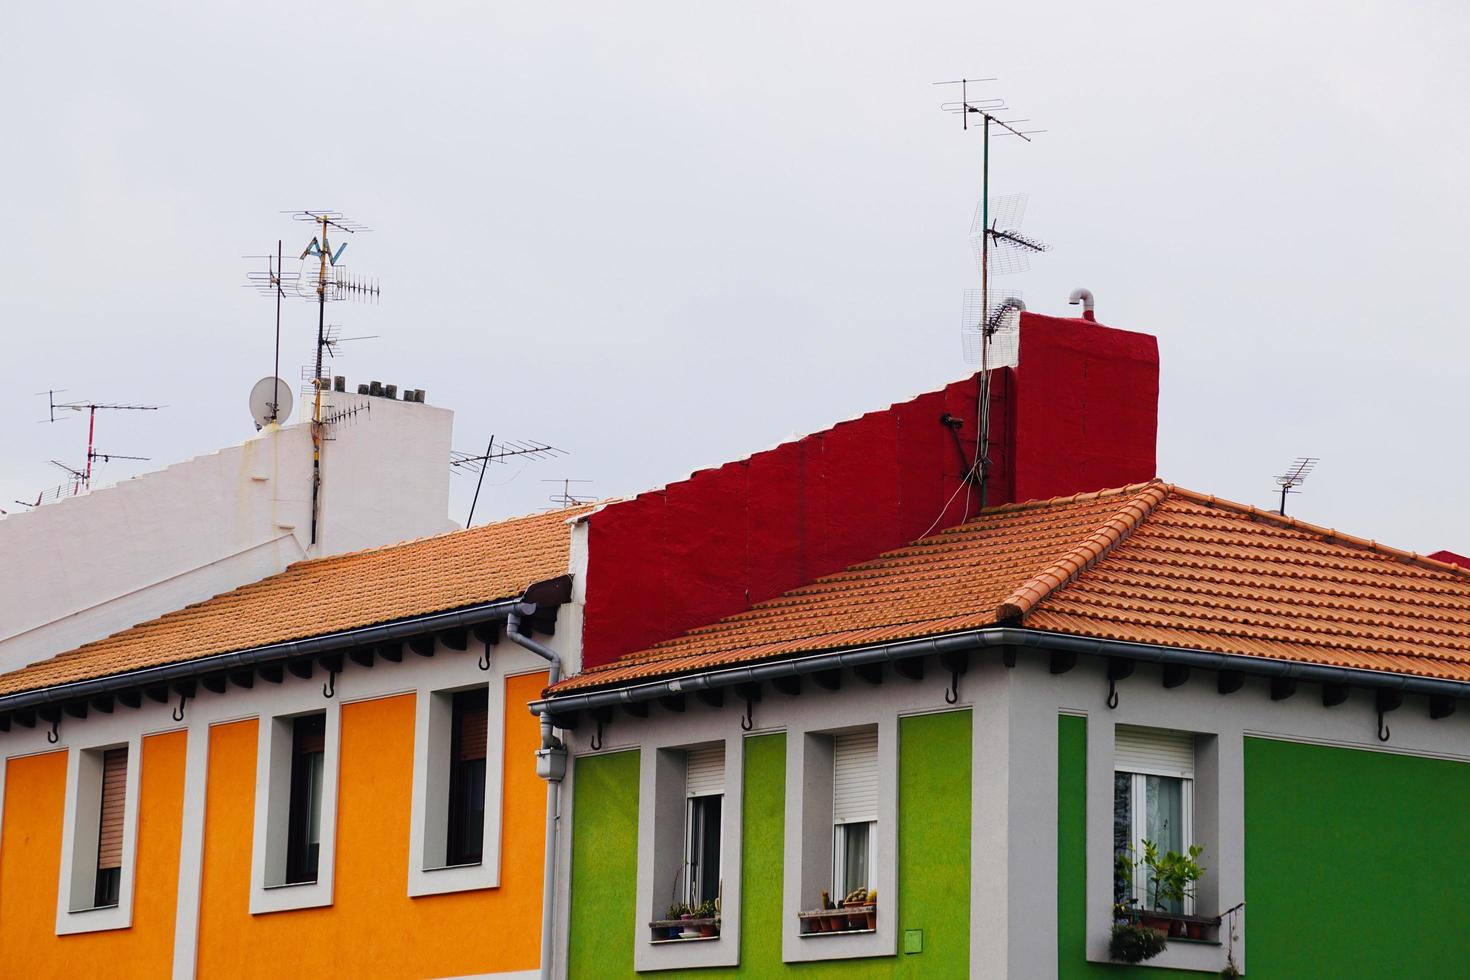 antena de tv no telhado de uma casa foto